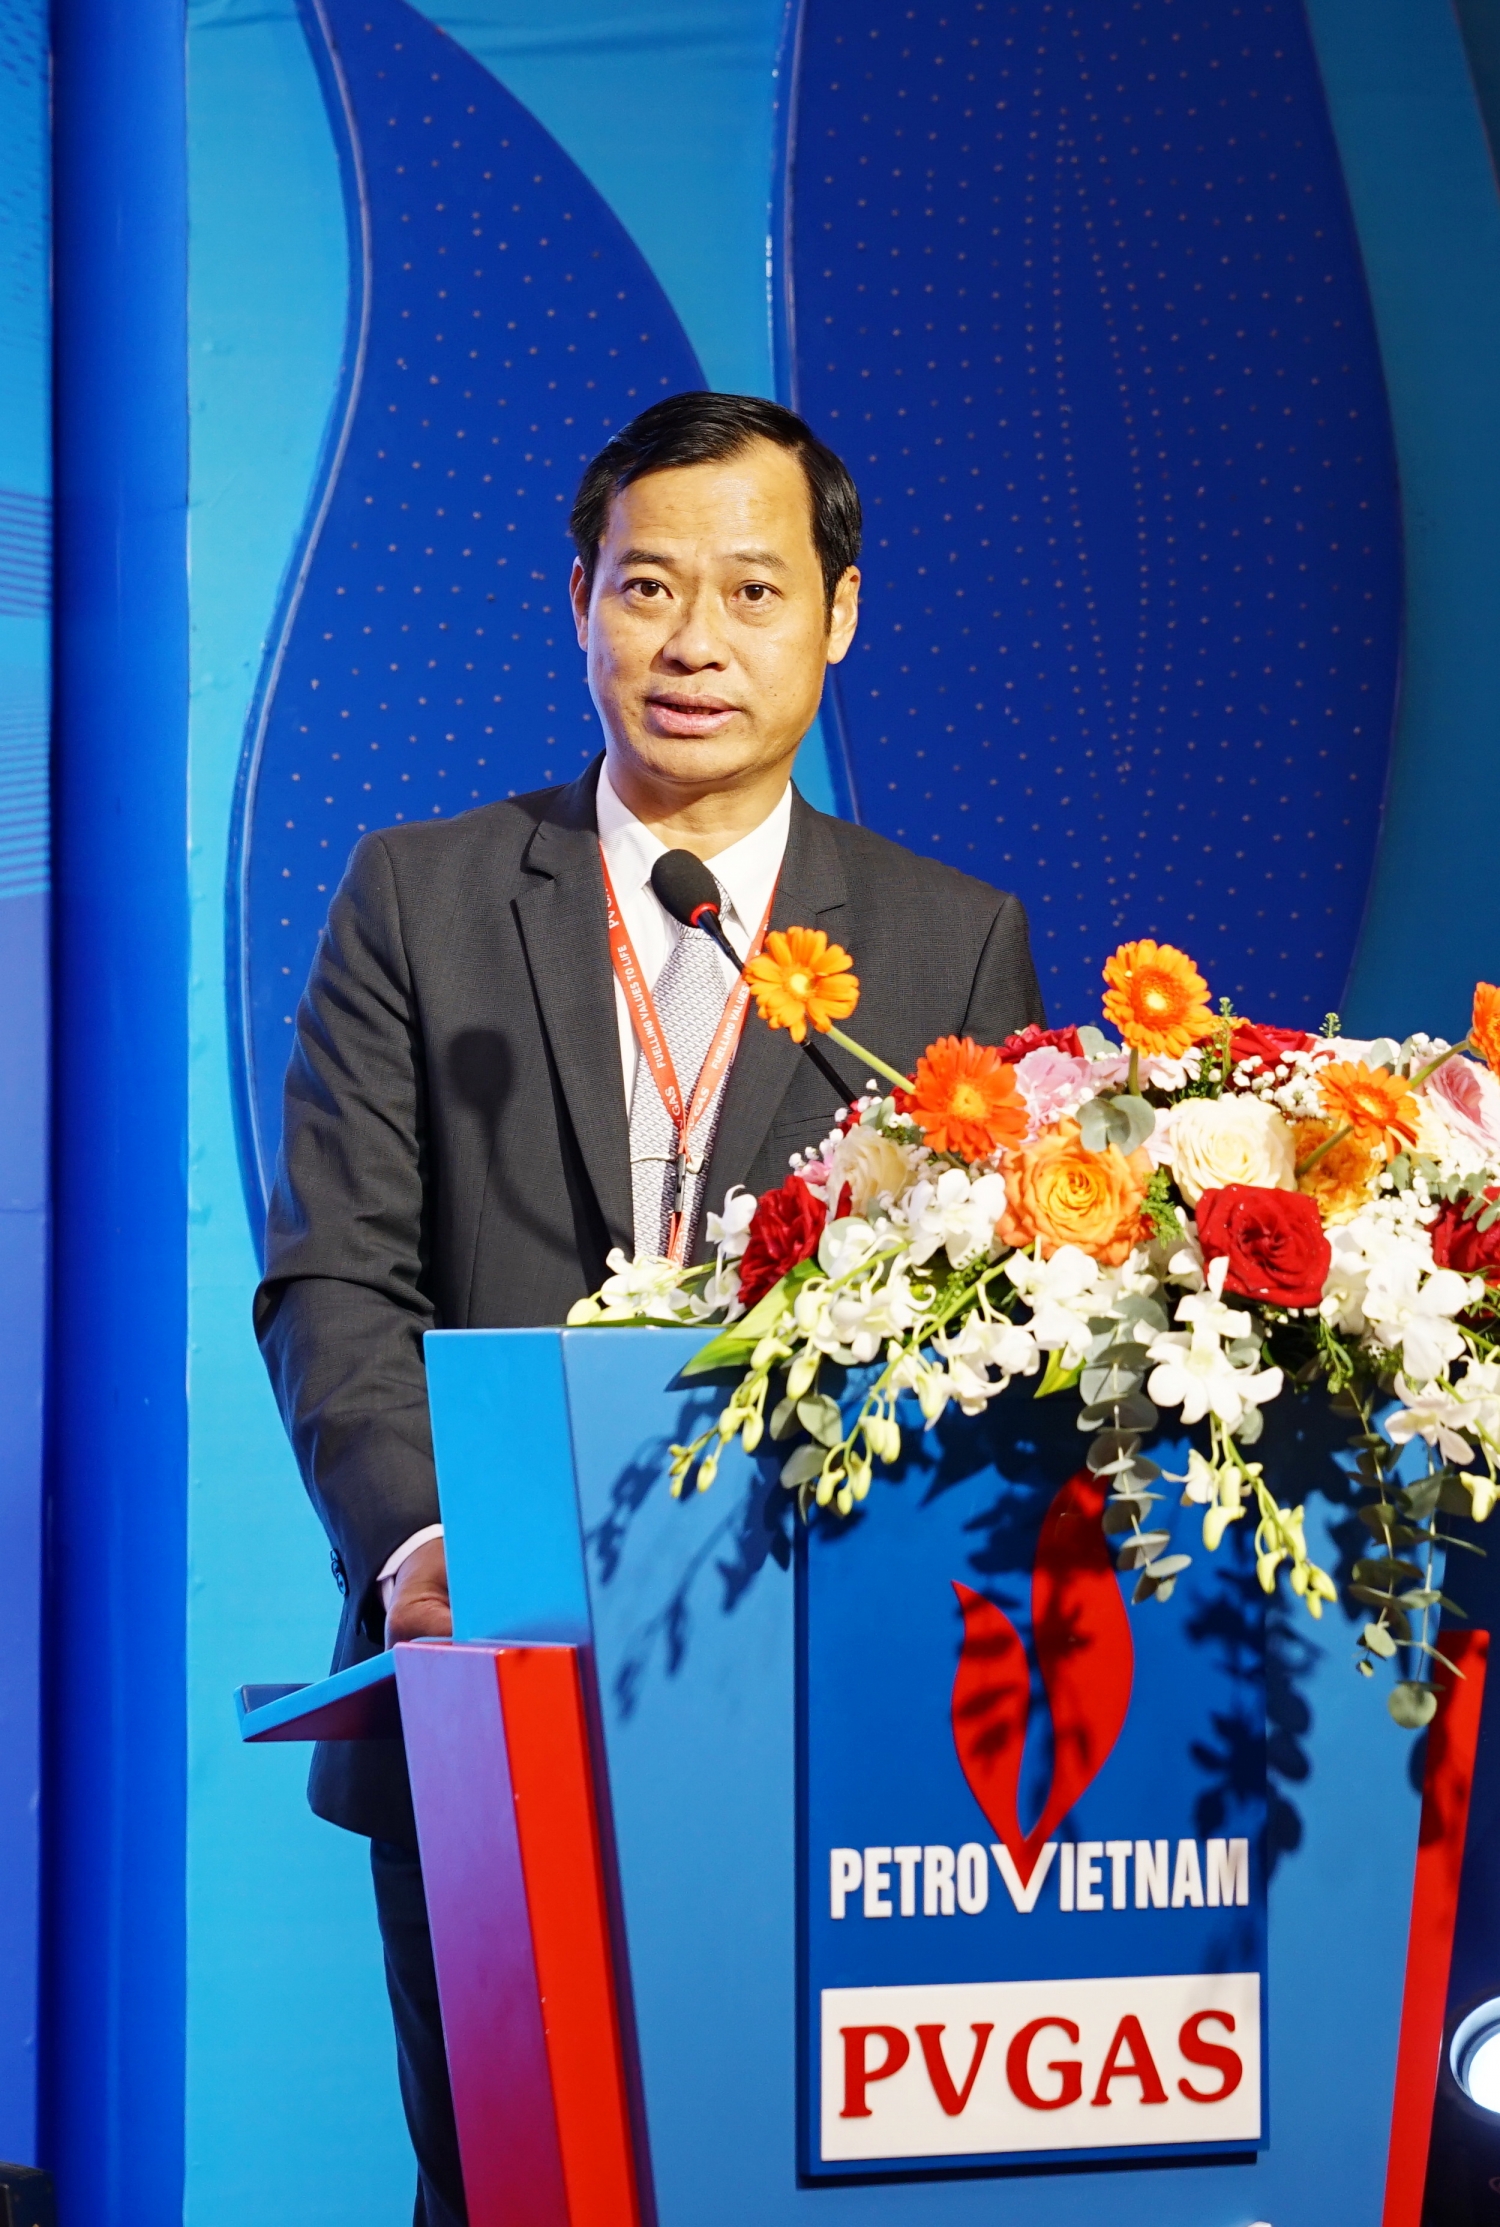 đồng chí Trần Xuân Thành – Chủ tịch Công đoàn PV GAS đã phát động Thi đua